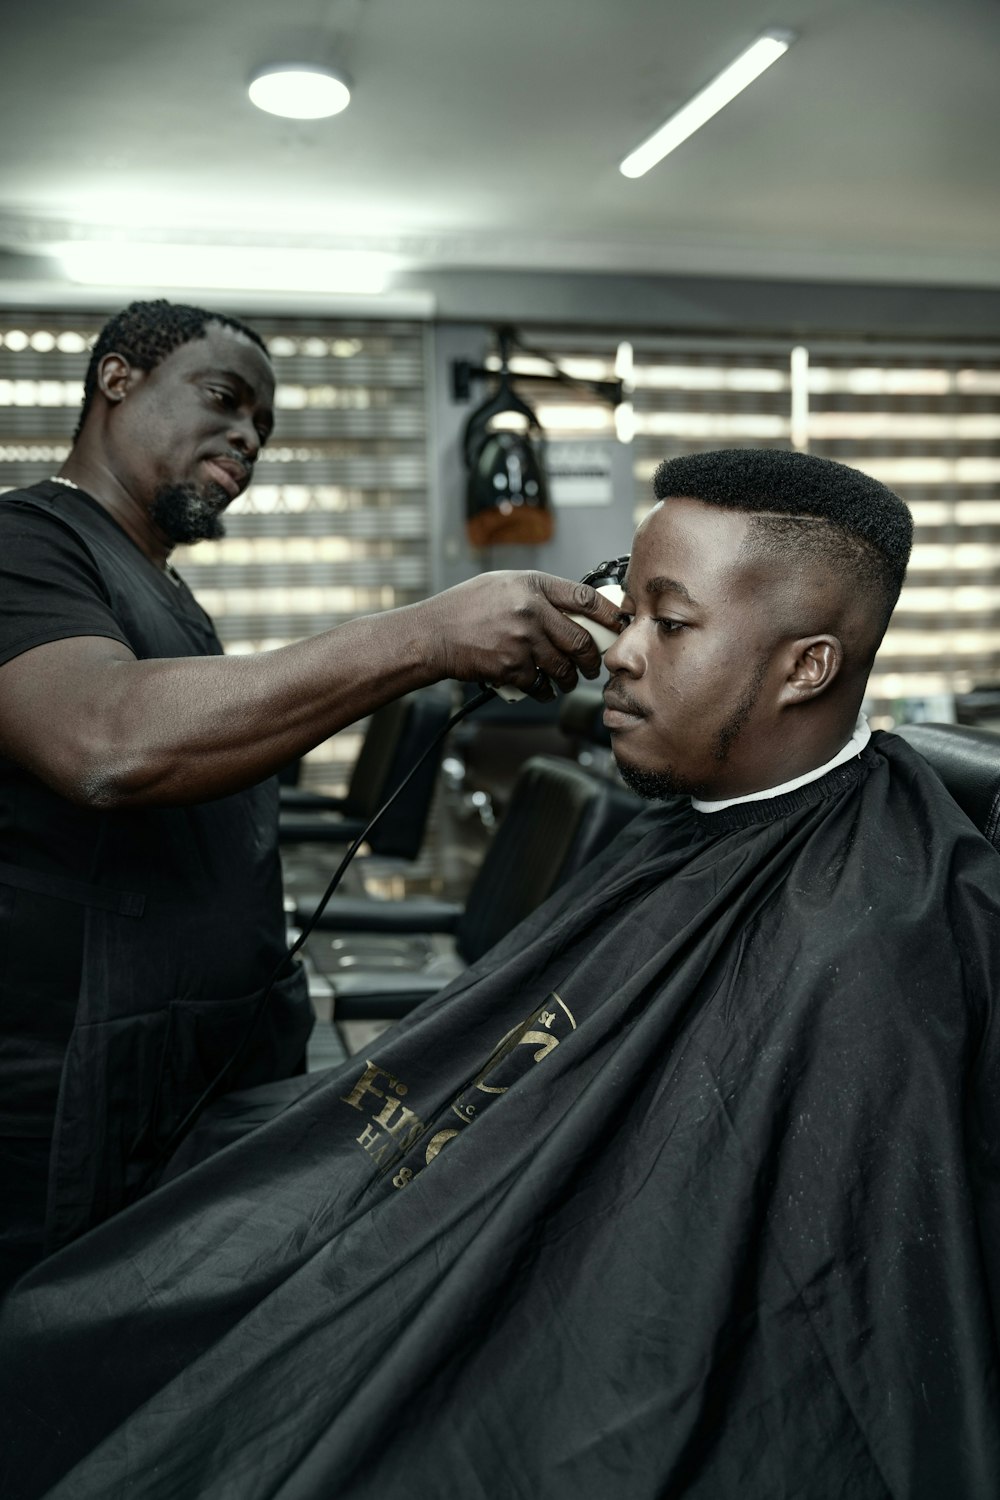 a man getting his hair cut by a barber